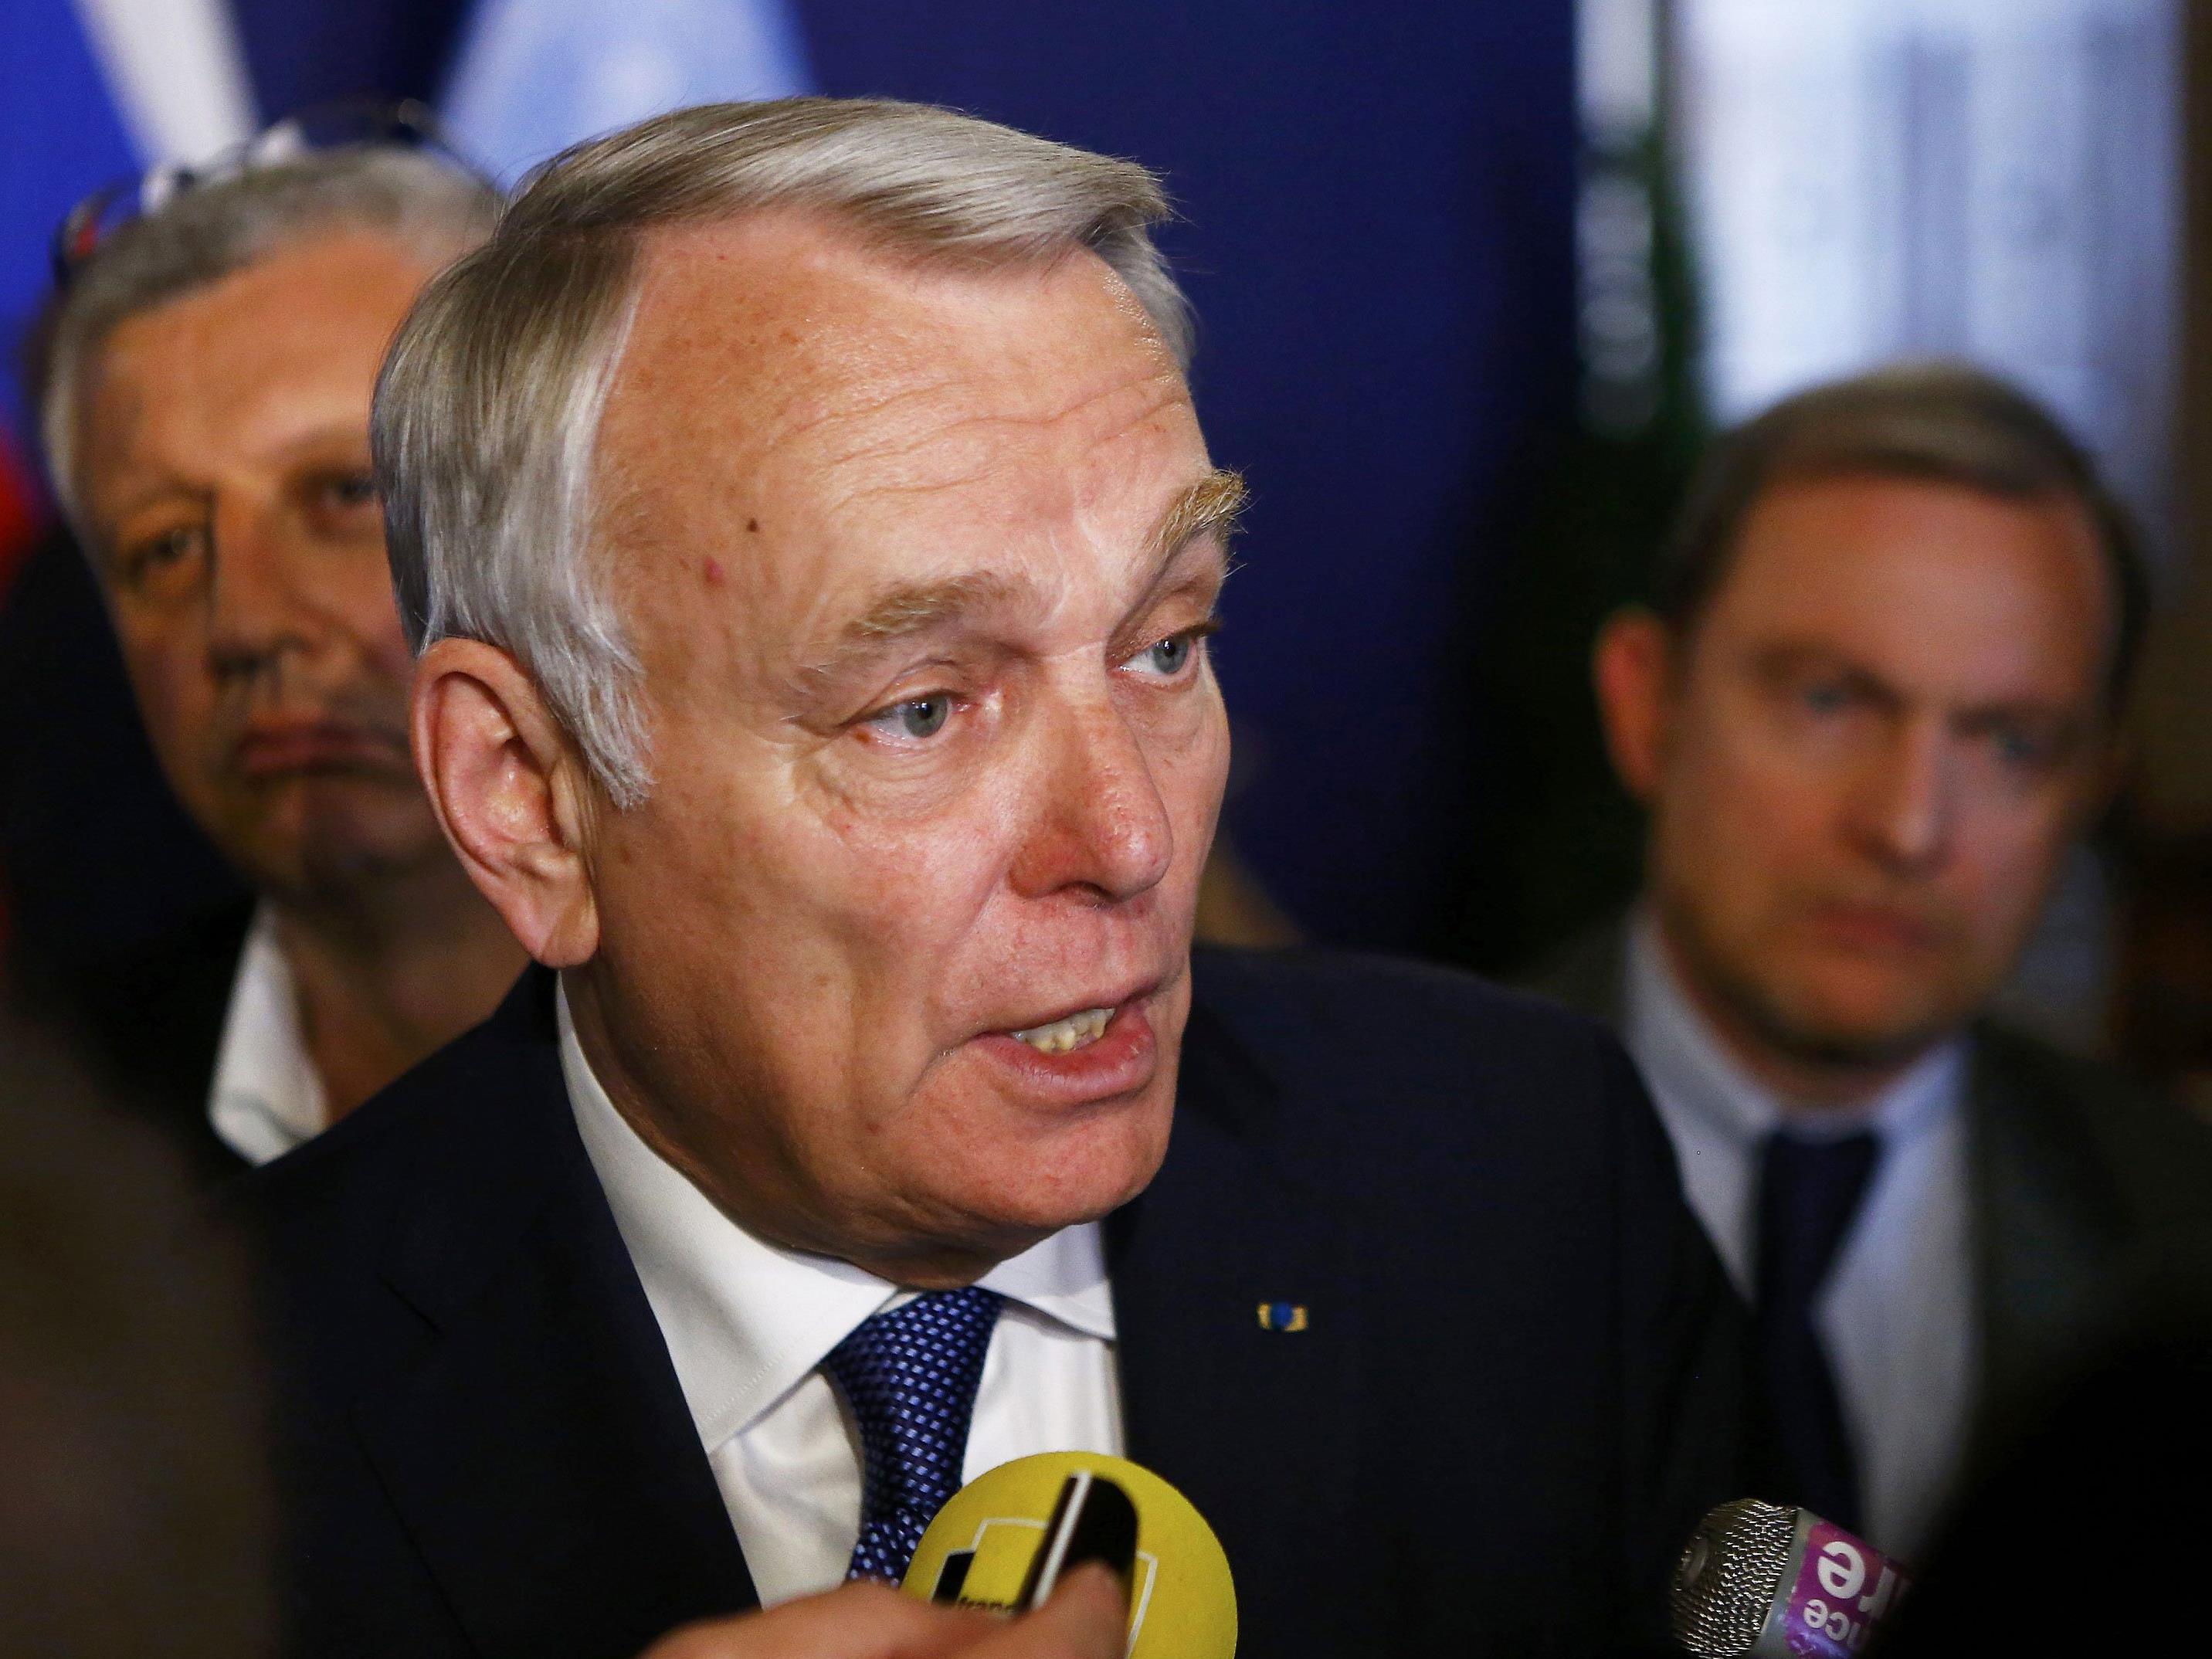 Der französische Außenminister Ayrault zeigt sich "besorgt" über die Möglichkeit eines Hofer-Siegs.